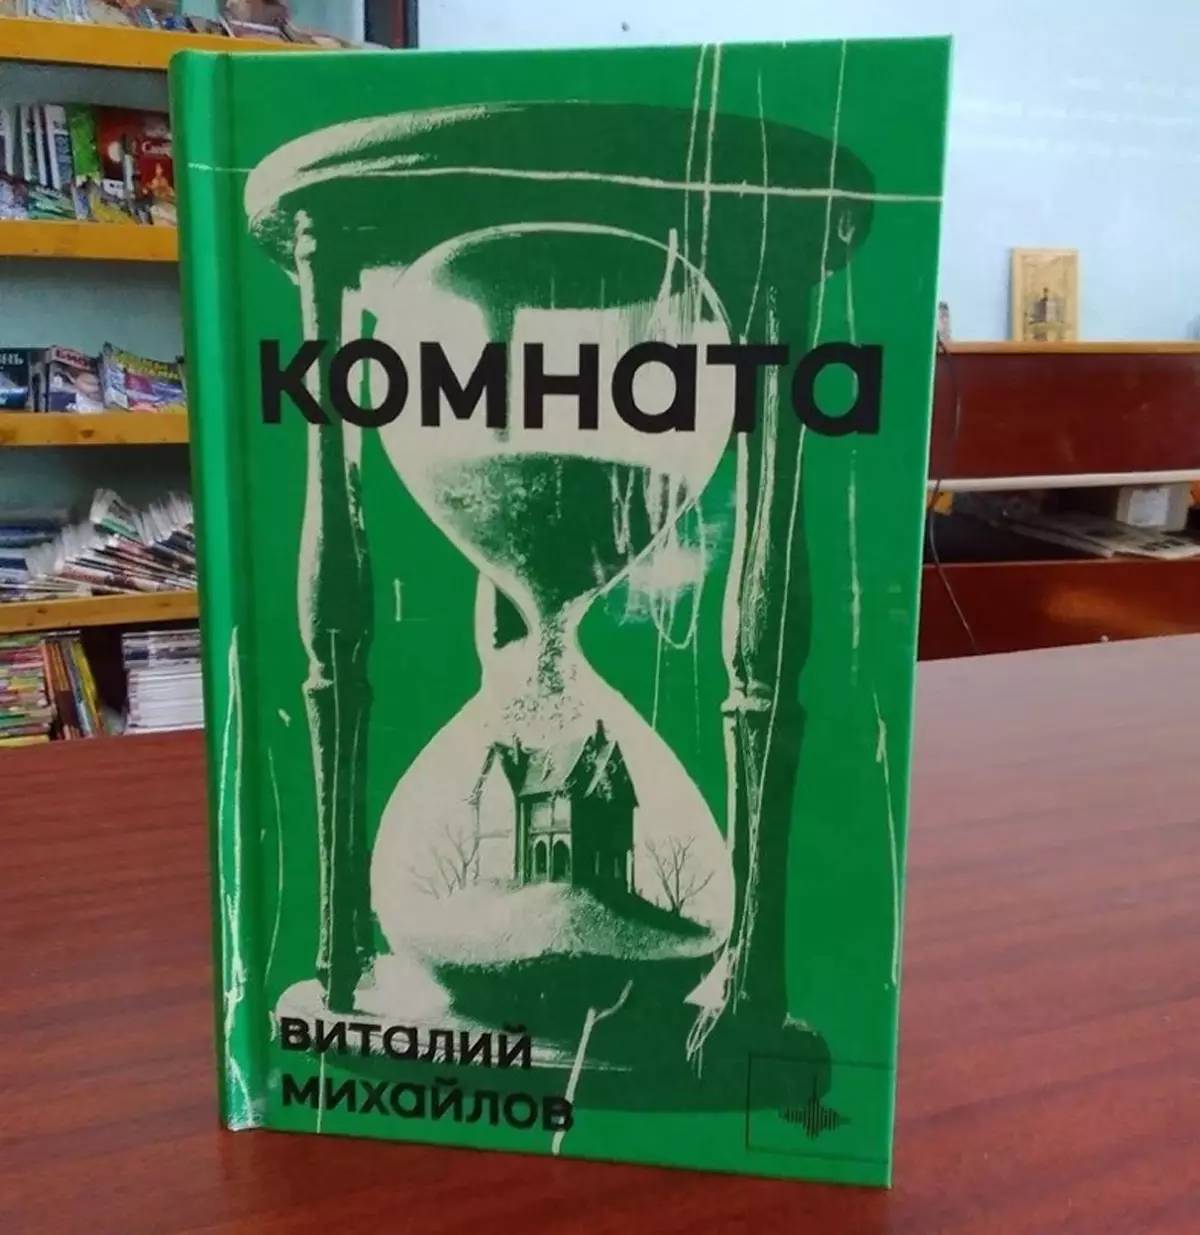 Издательском дом «Городец» опубликовал книгу хвойнинского библиографа Виталия Михайлова